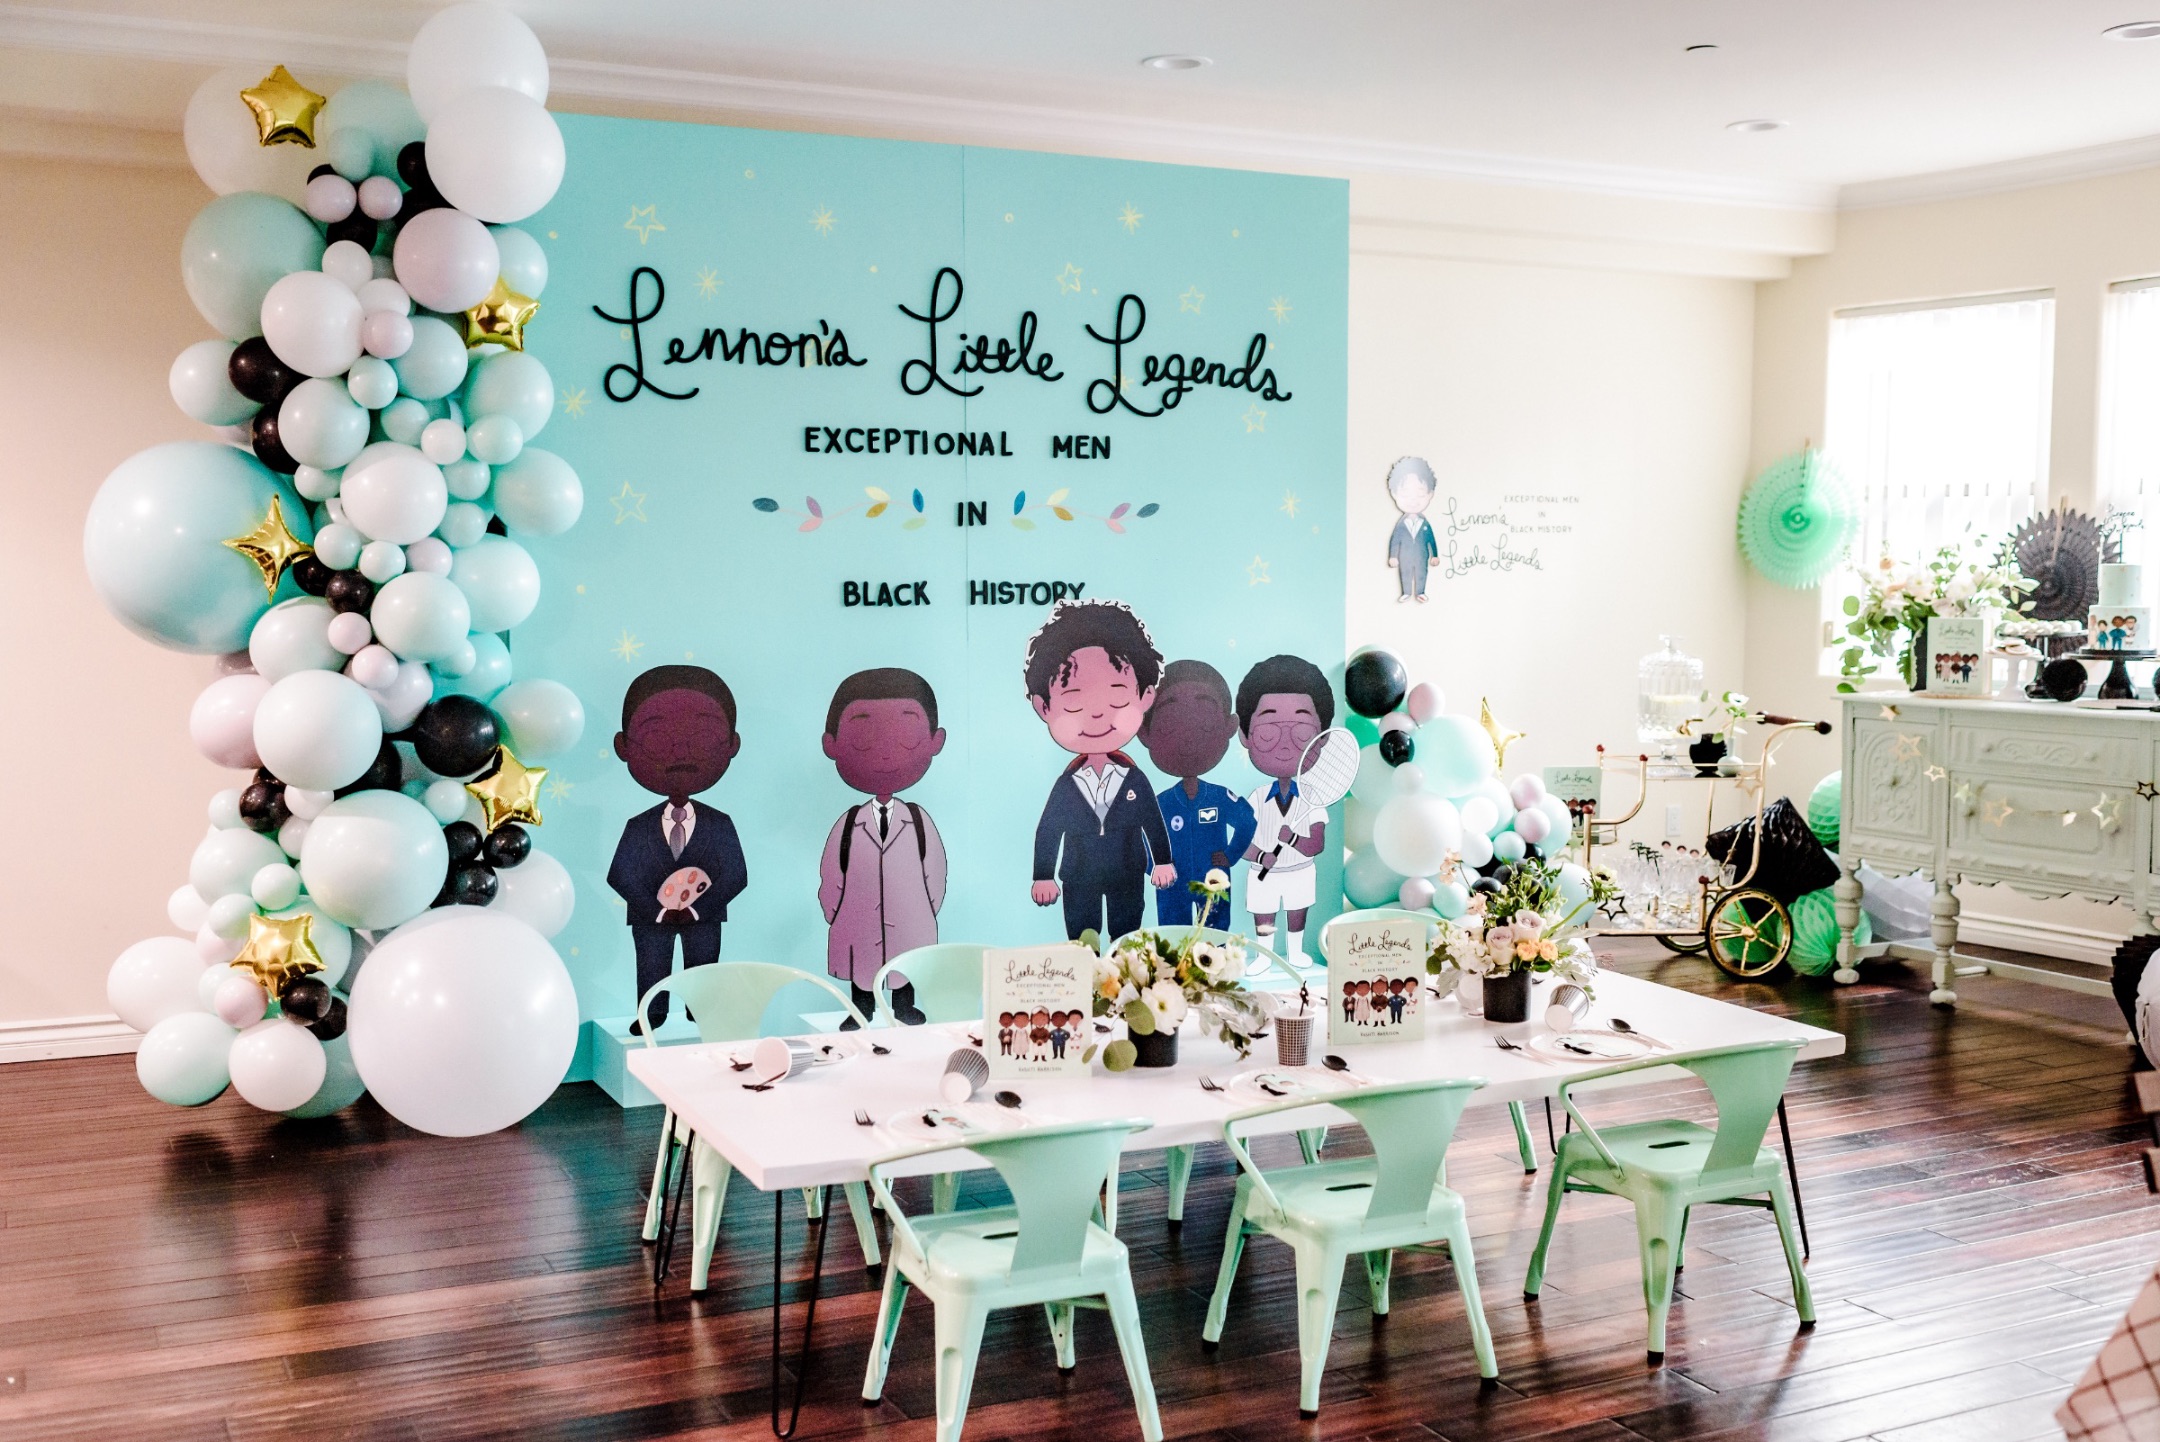 Little Legends book party, Lennon&#8217;s Little Legends book party